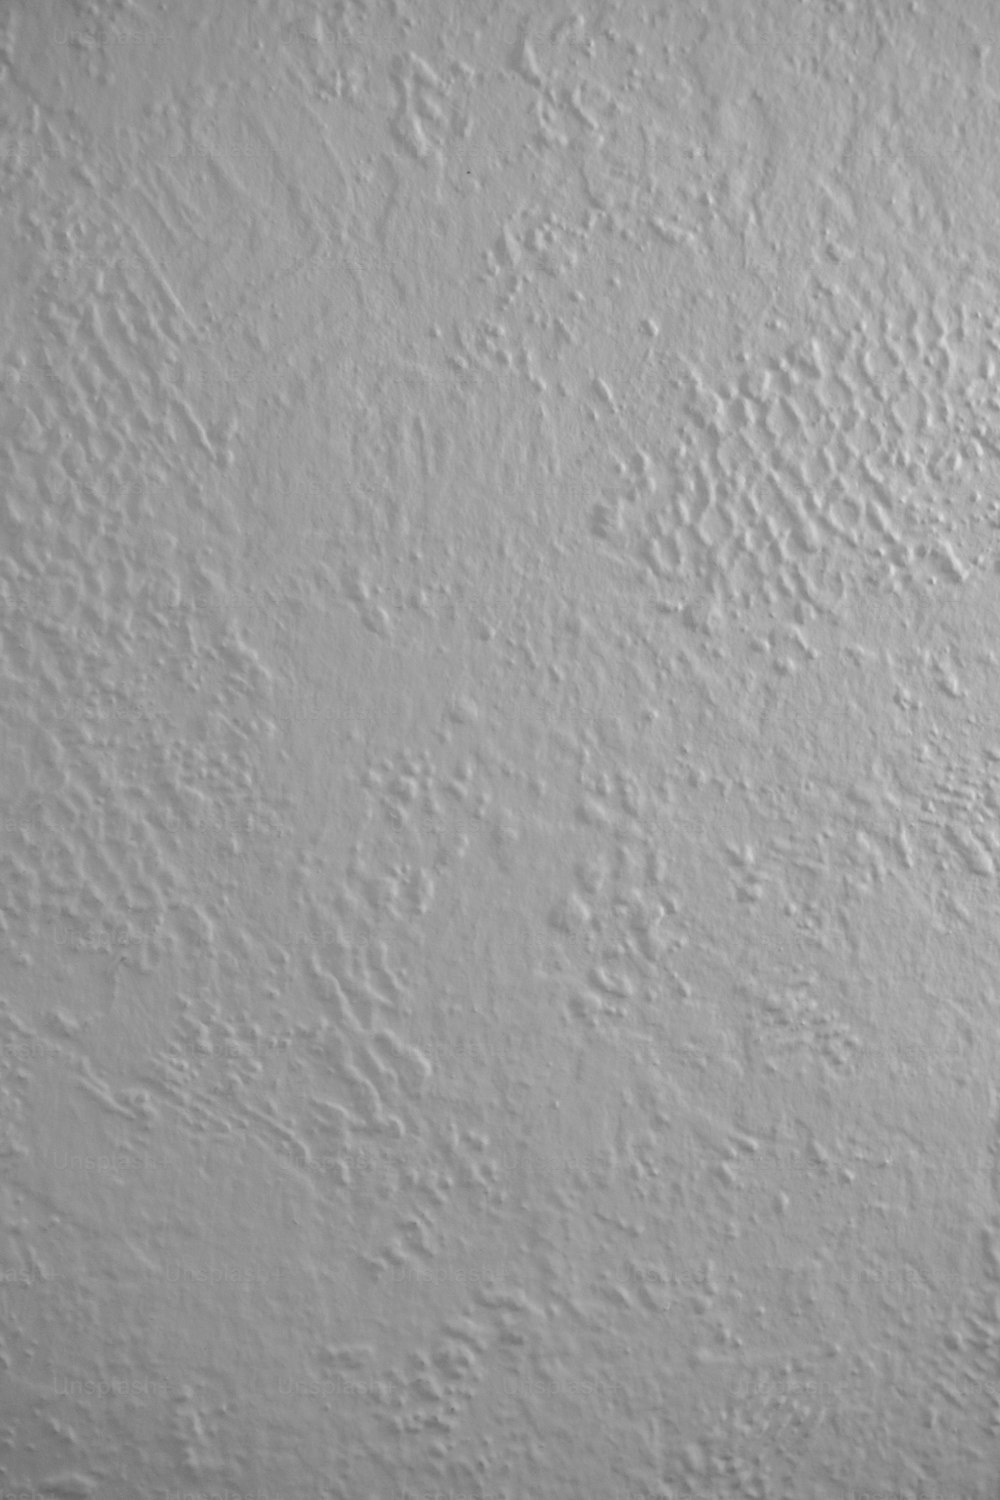 흰 벽의 흑백 사진